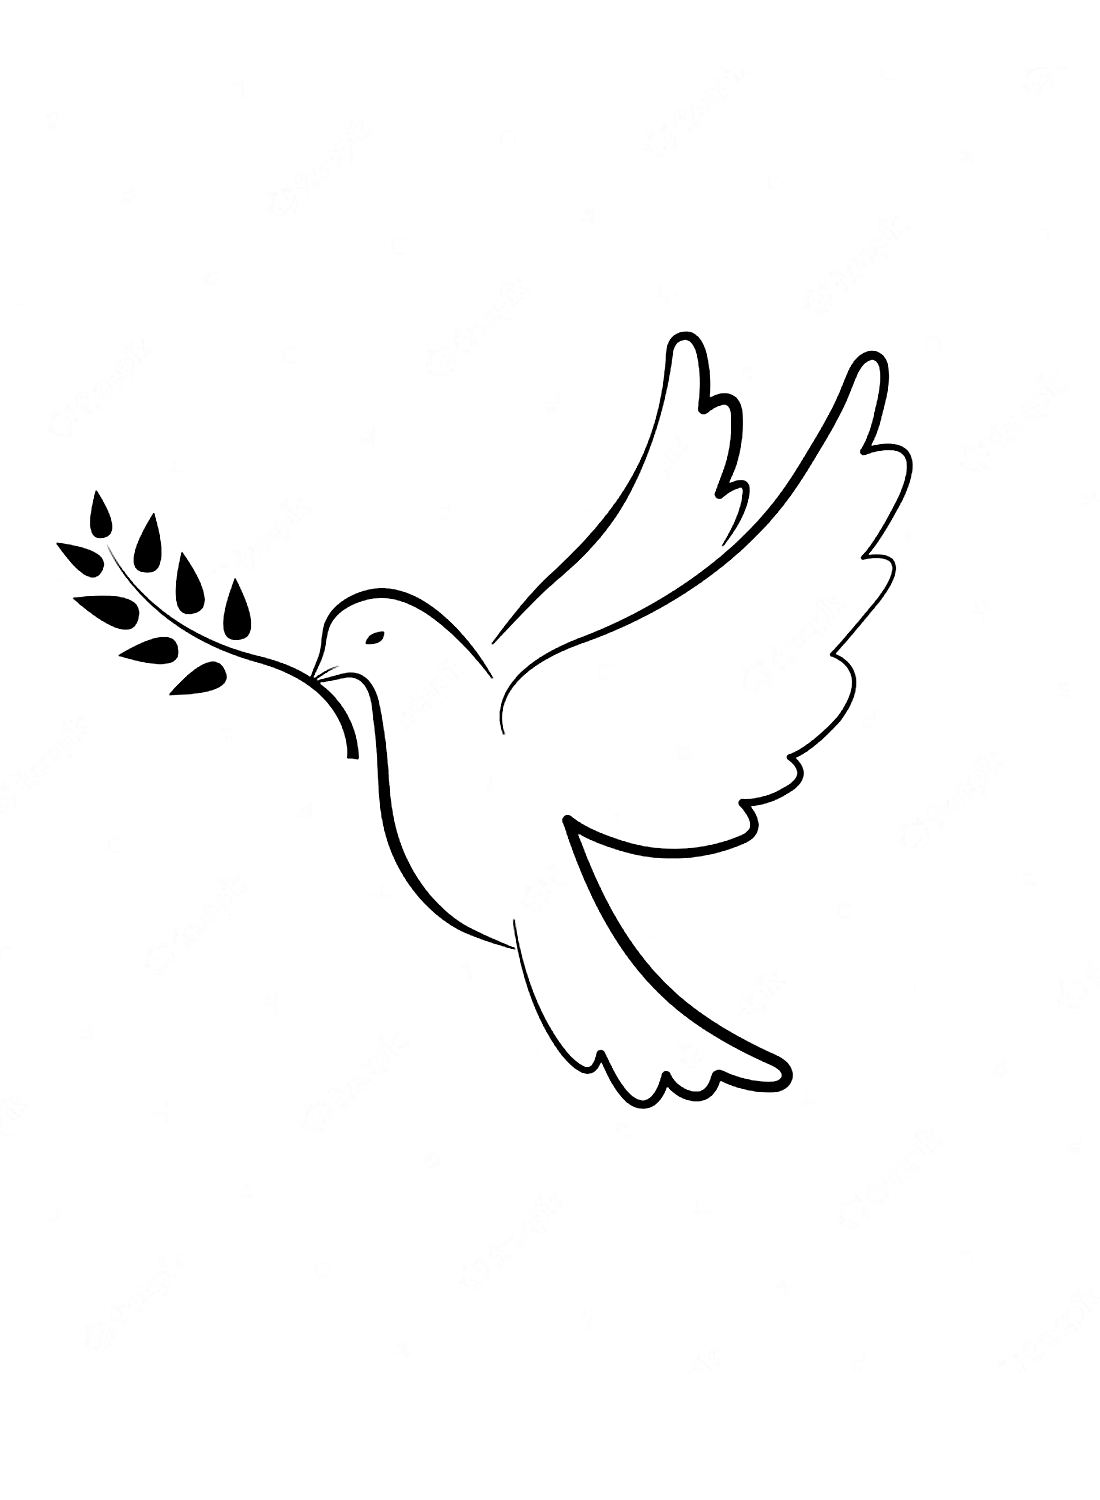 Una simple paloma de Doves.